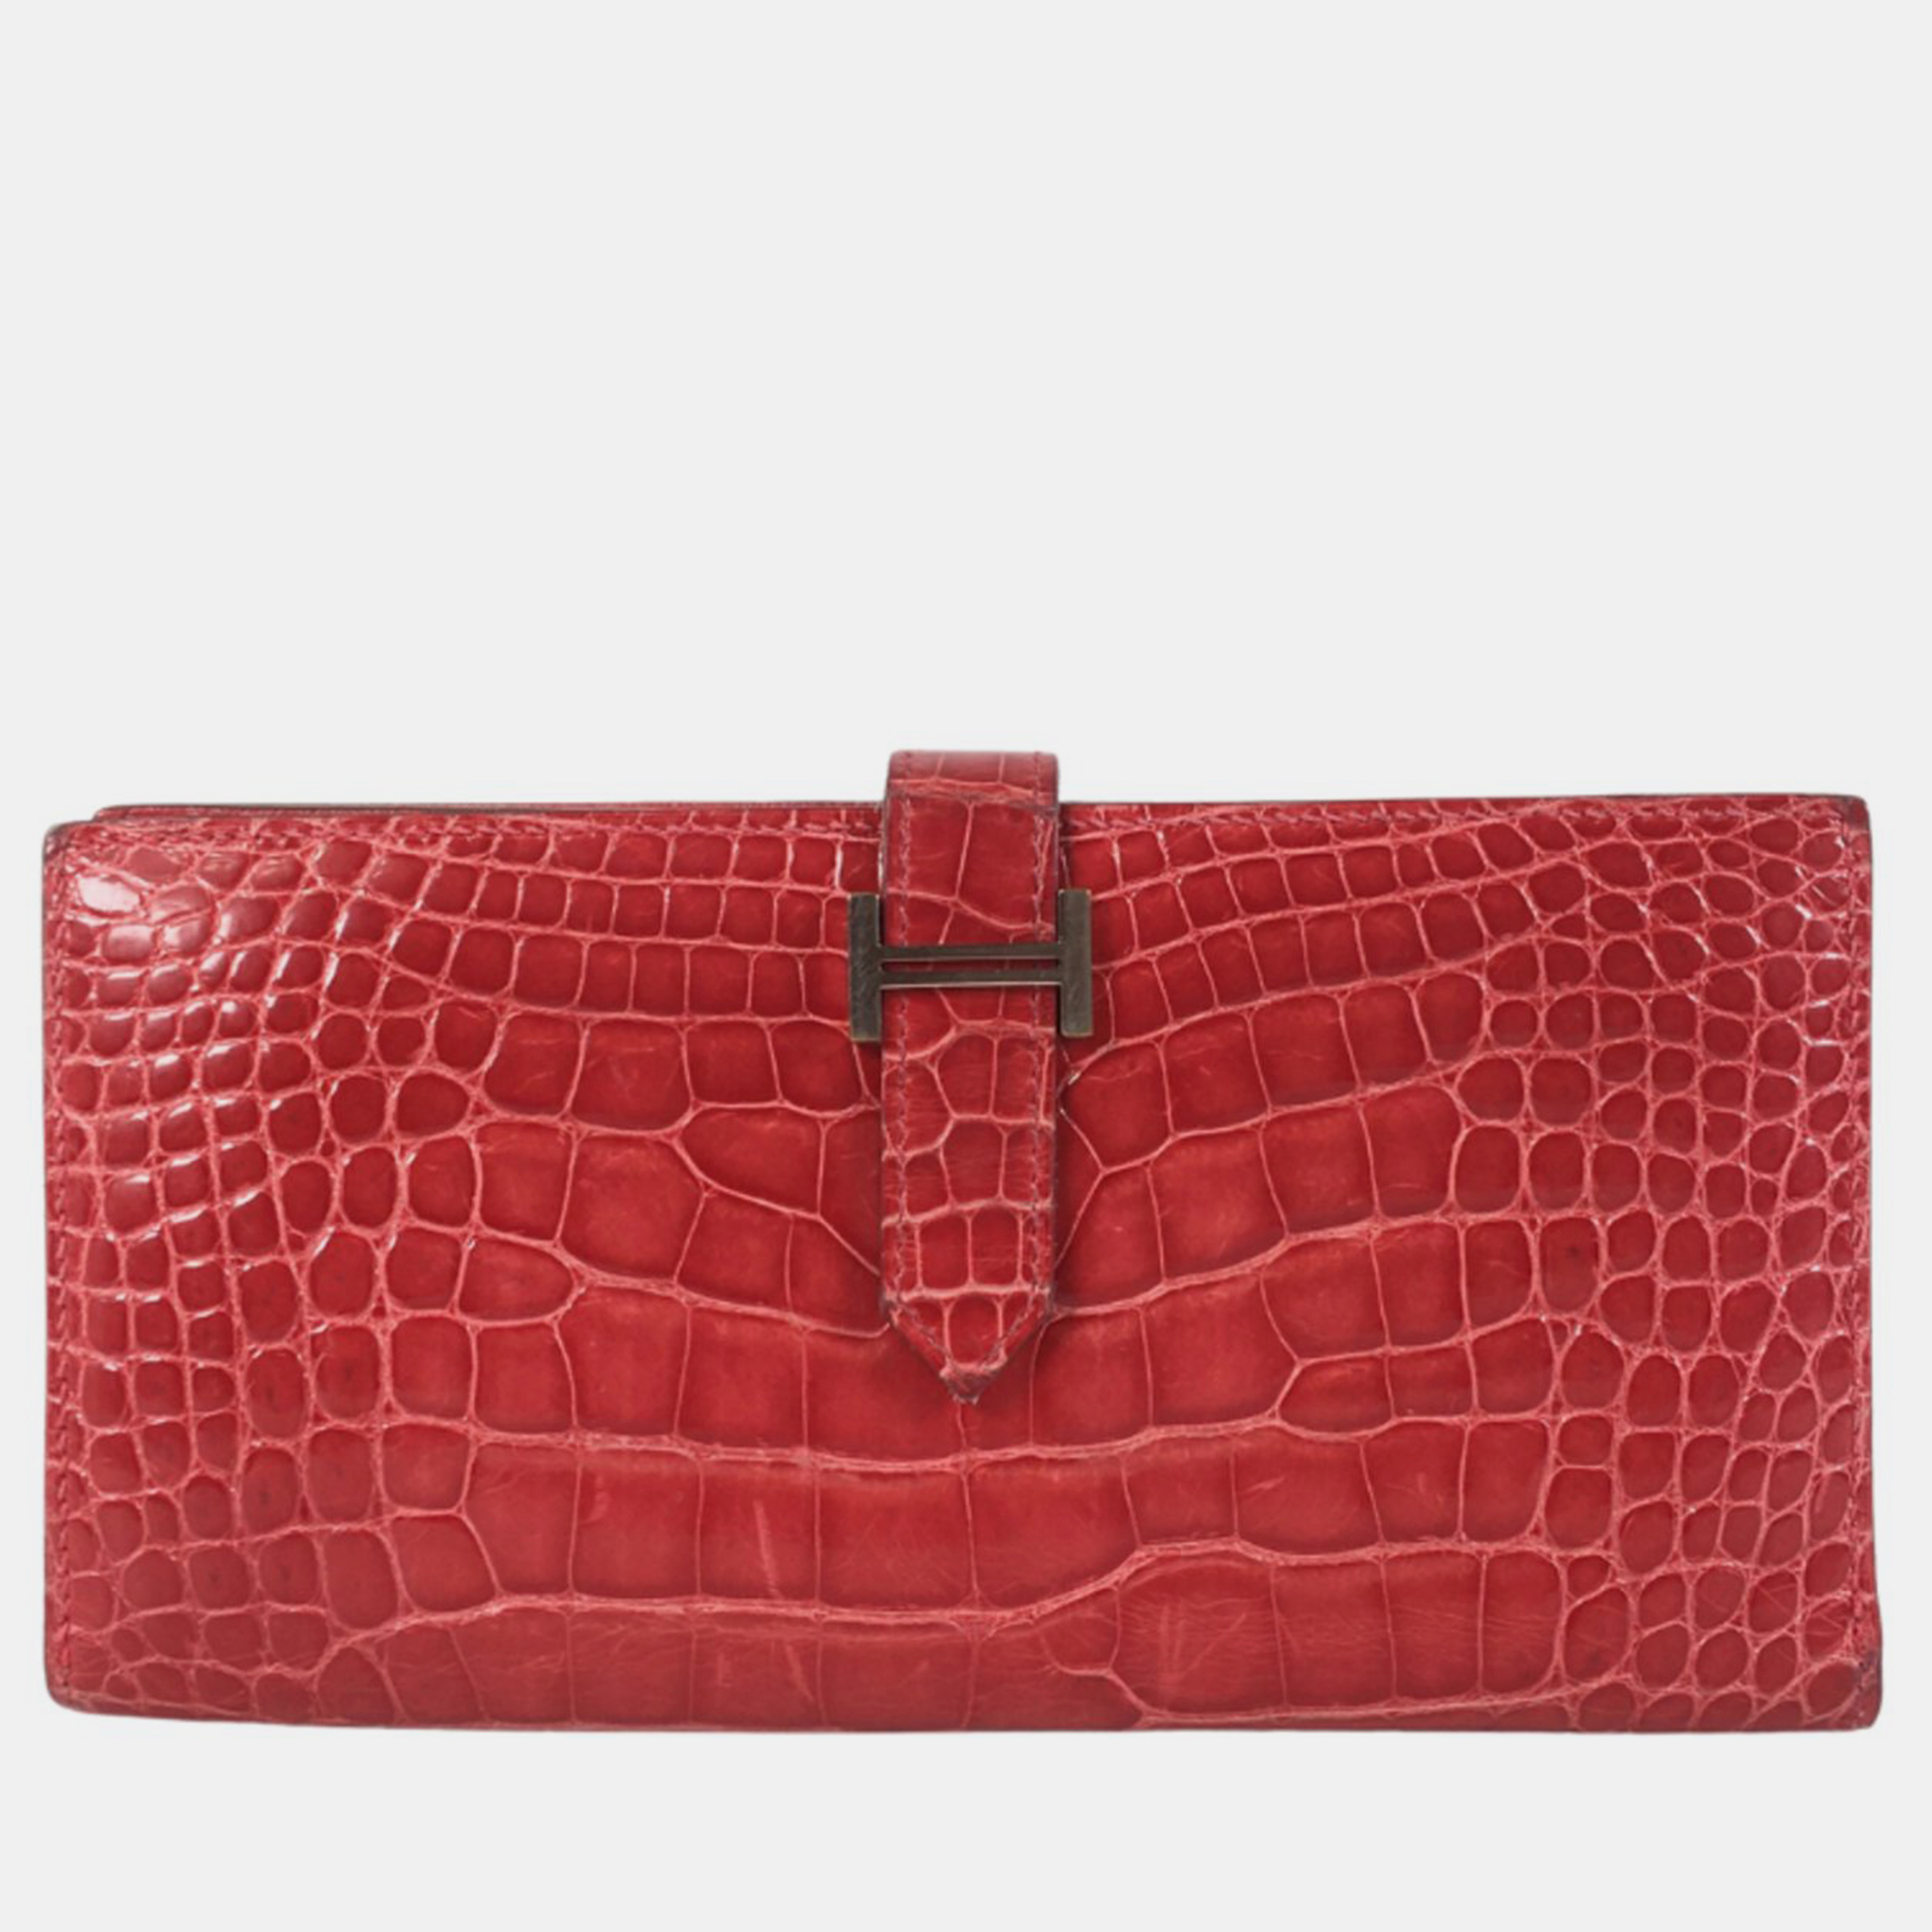 Hermes red crocodile bearn wallet